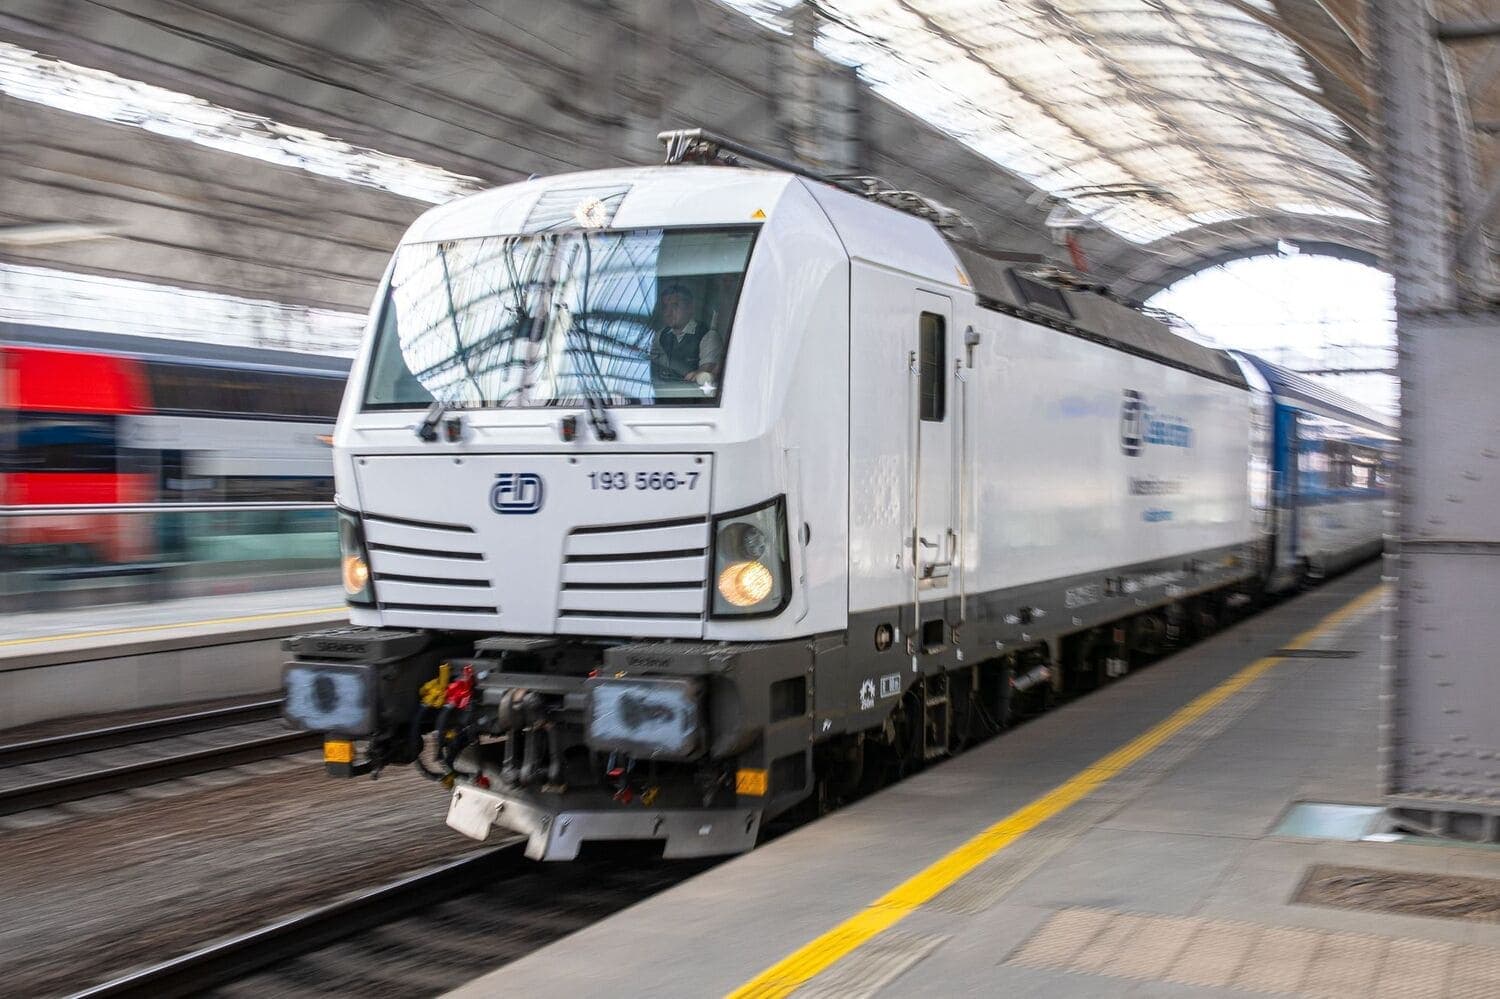 České dráhy представили свой новый поезд ComfortJet